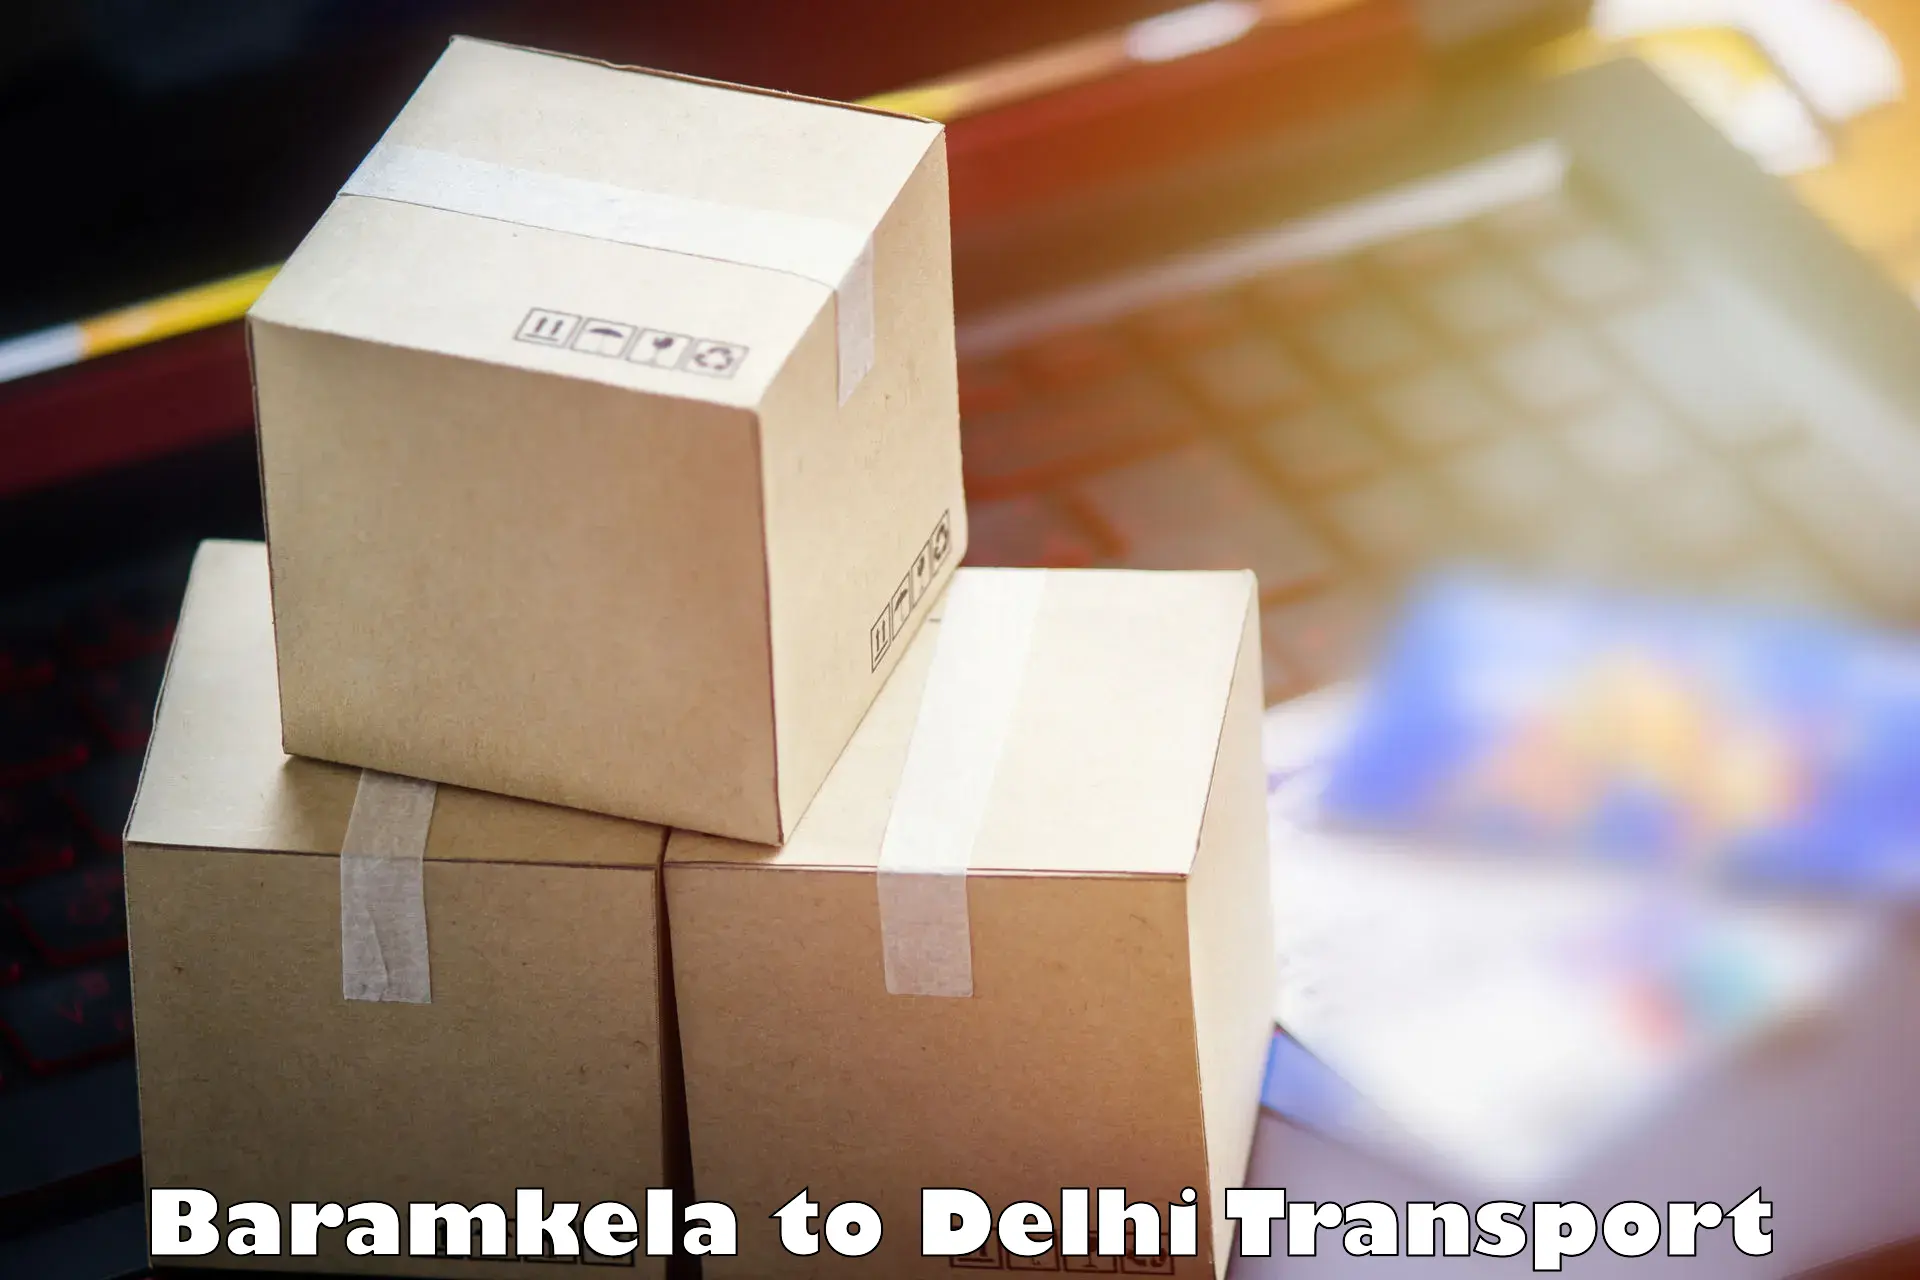 Material transport services Baramkela to Jamia Millia Islamia New Delhi